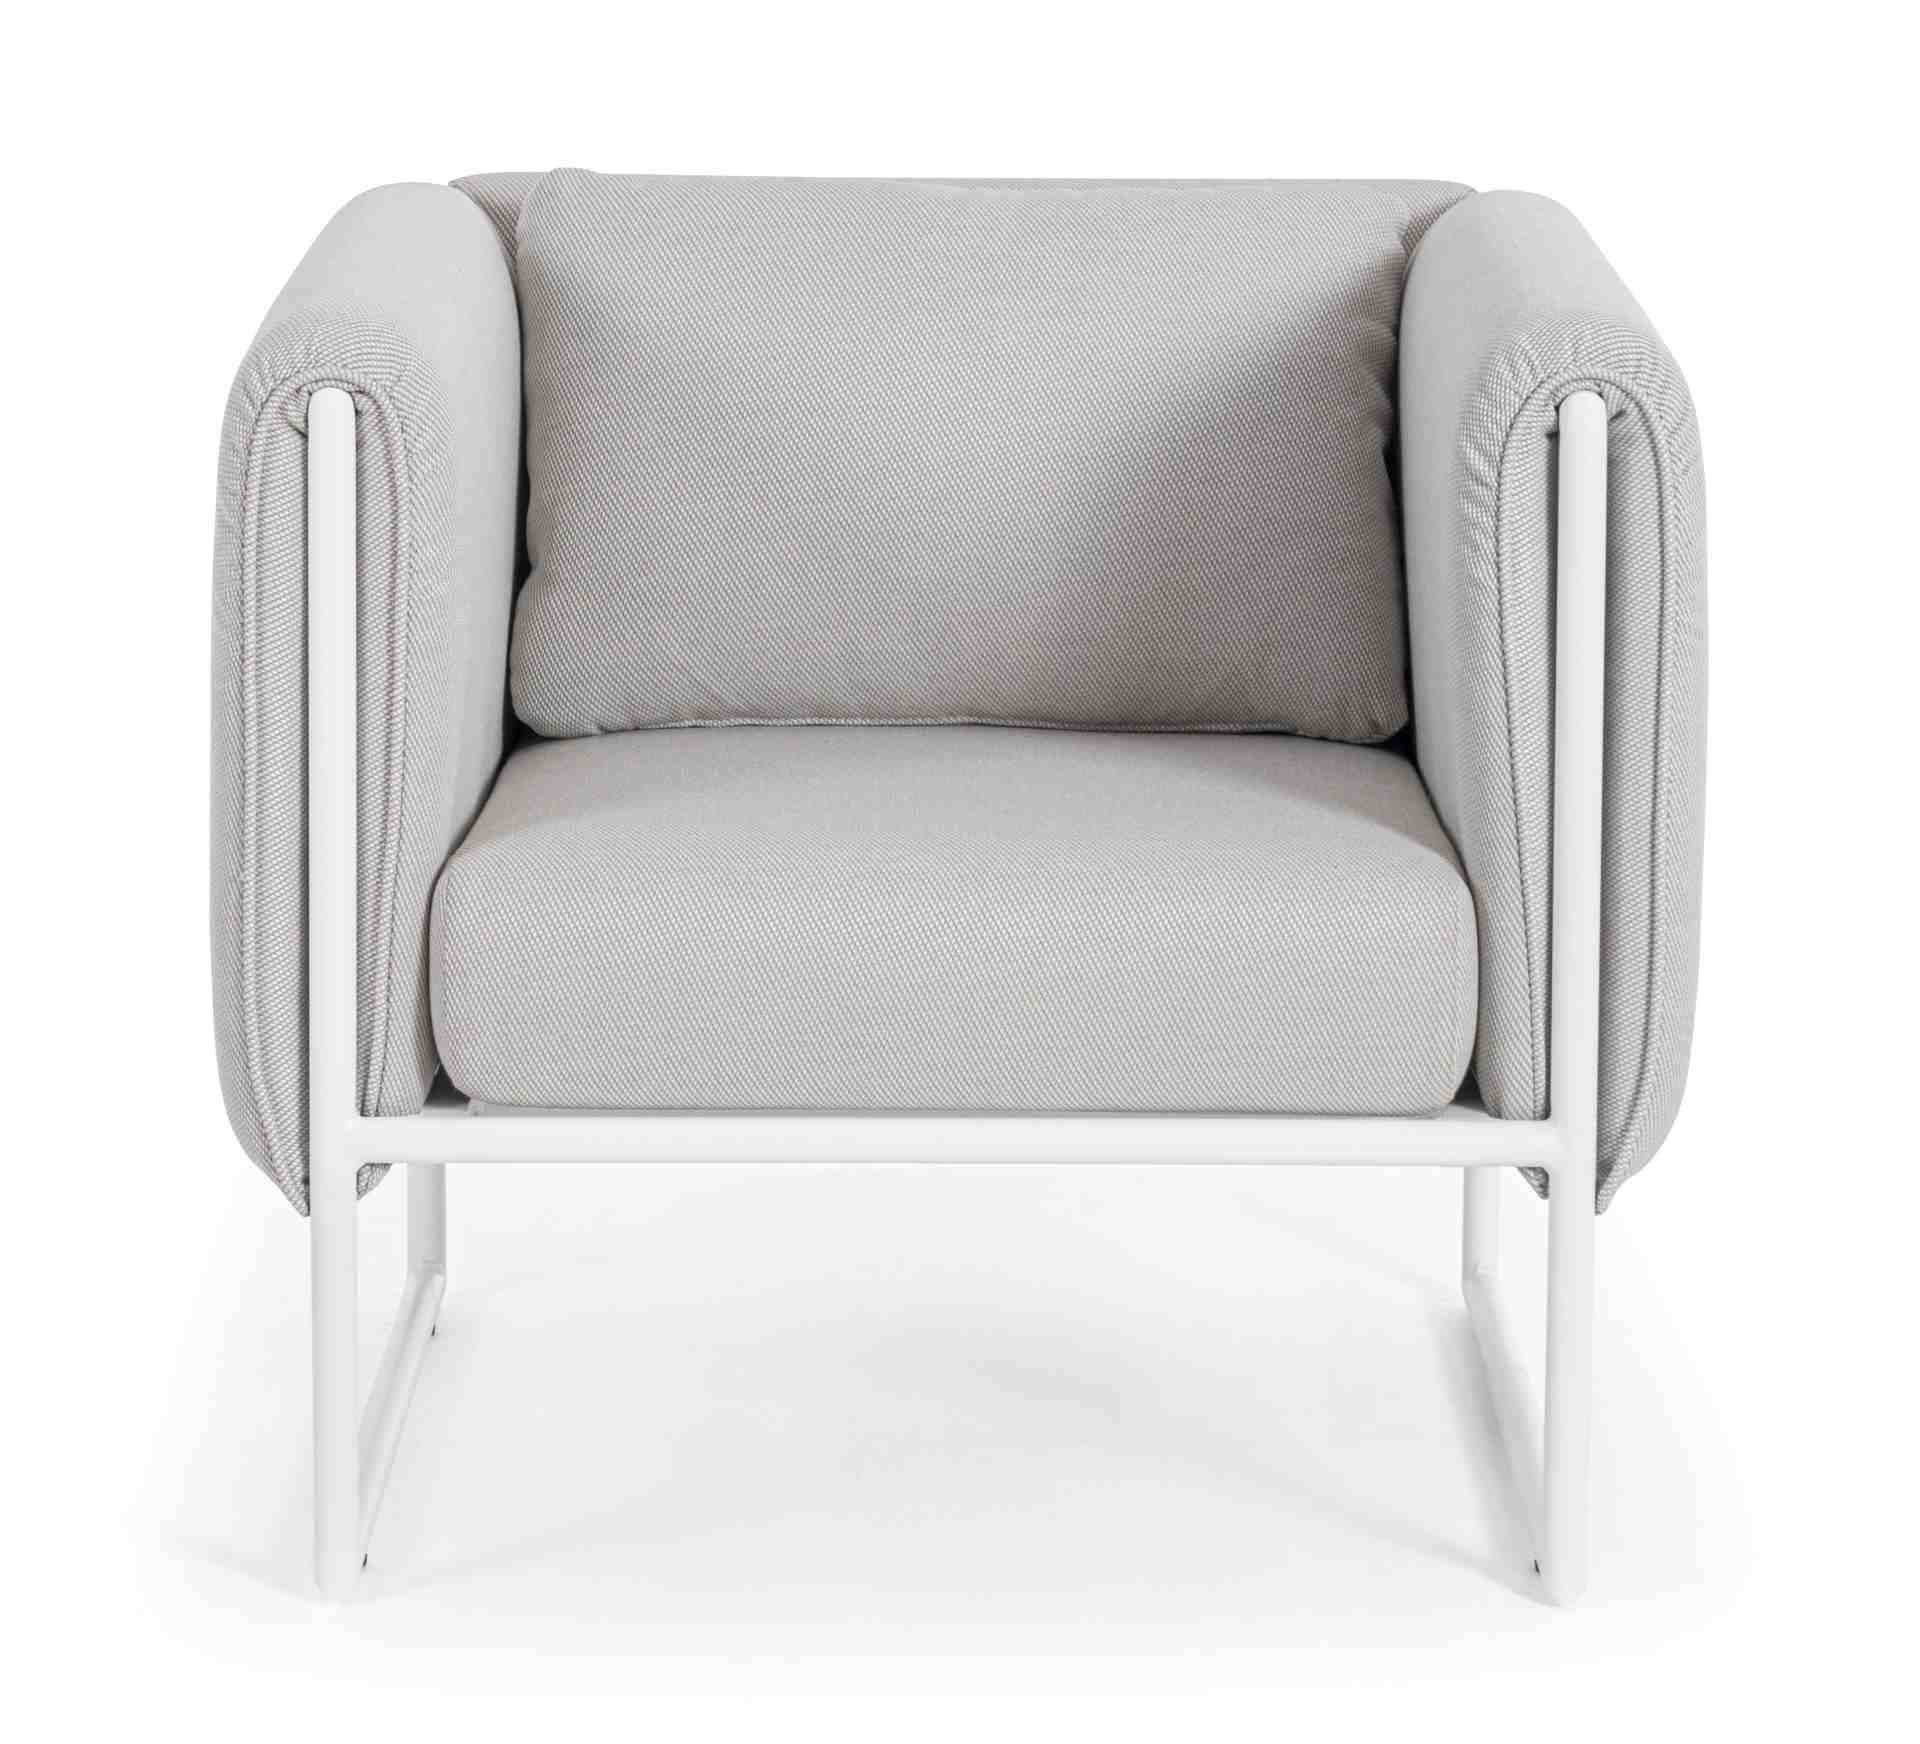 Der Gartensessel Pixel überzeugt mit seinem modernen Design. Gefertigt wurde er aus Olefin-Stoff, welcher einen grauen Farbton besitzt. Das Gestell ist aus Aluminium und hat eine weiße Farbe. Der Sessel verfügt über eine Sitzhöhe von 42 cm und ist für den